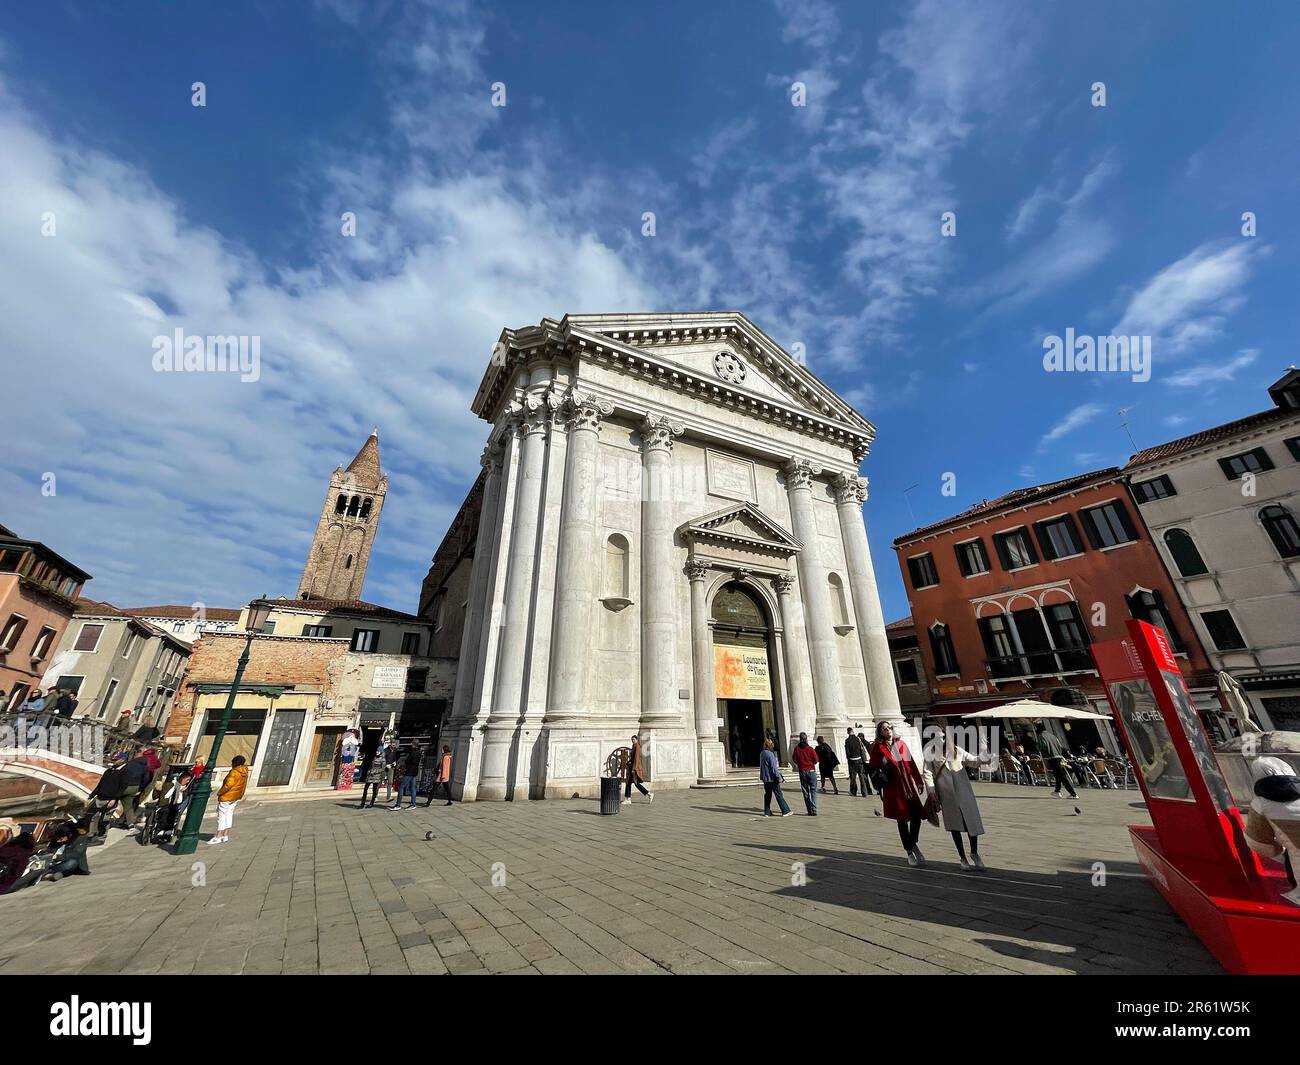 Venezia, 3 aprile 2022: Campo San Barnaba è una piazza del Dorsoduro sestiere di Venezia. La chiesa del quartiere è la San Barnaba. Foto Stock